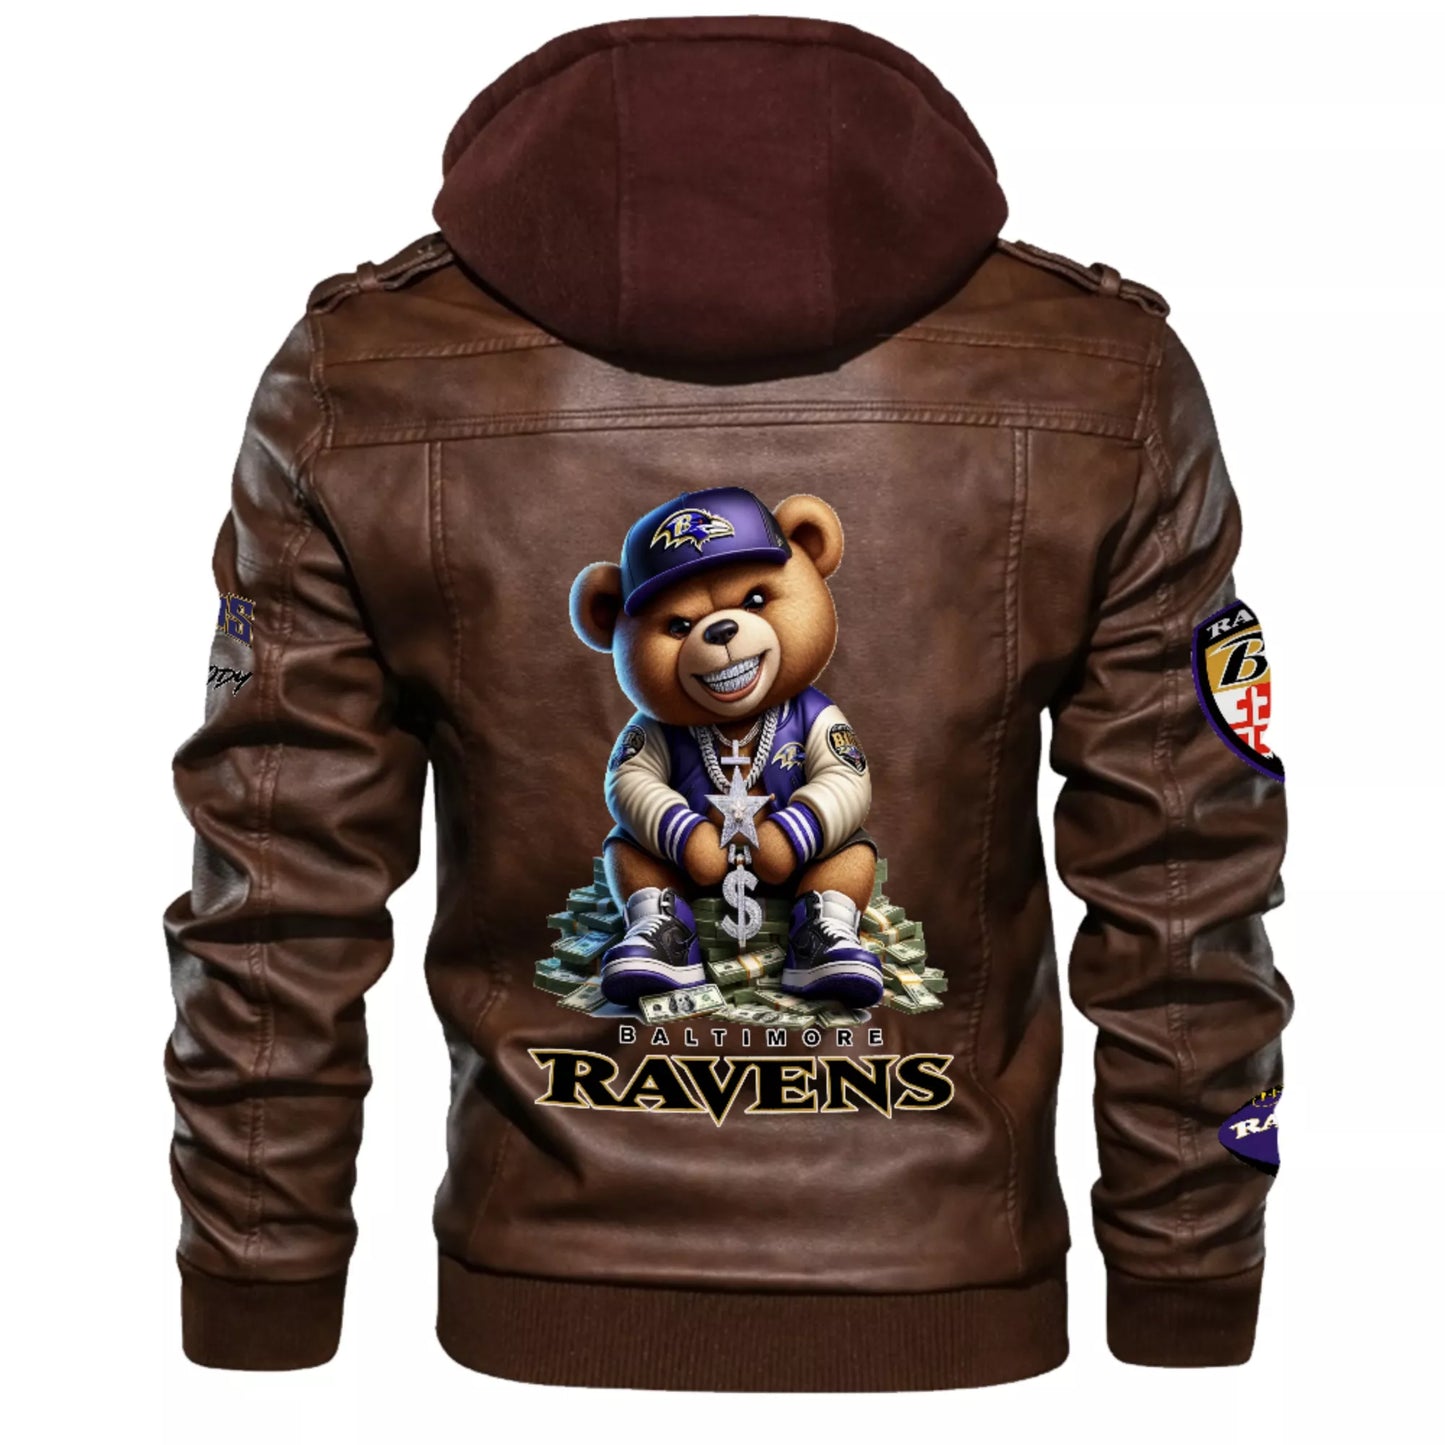 Ravens Leather Hood Jacket